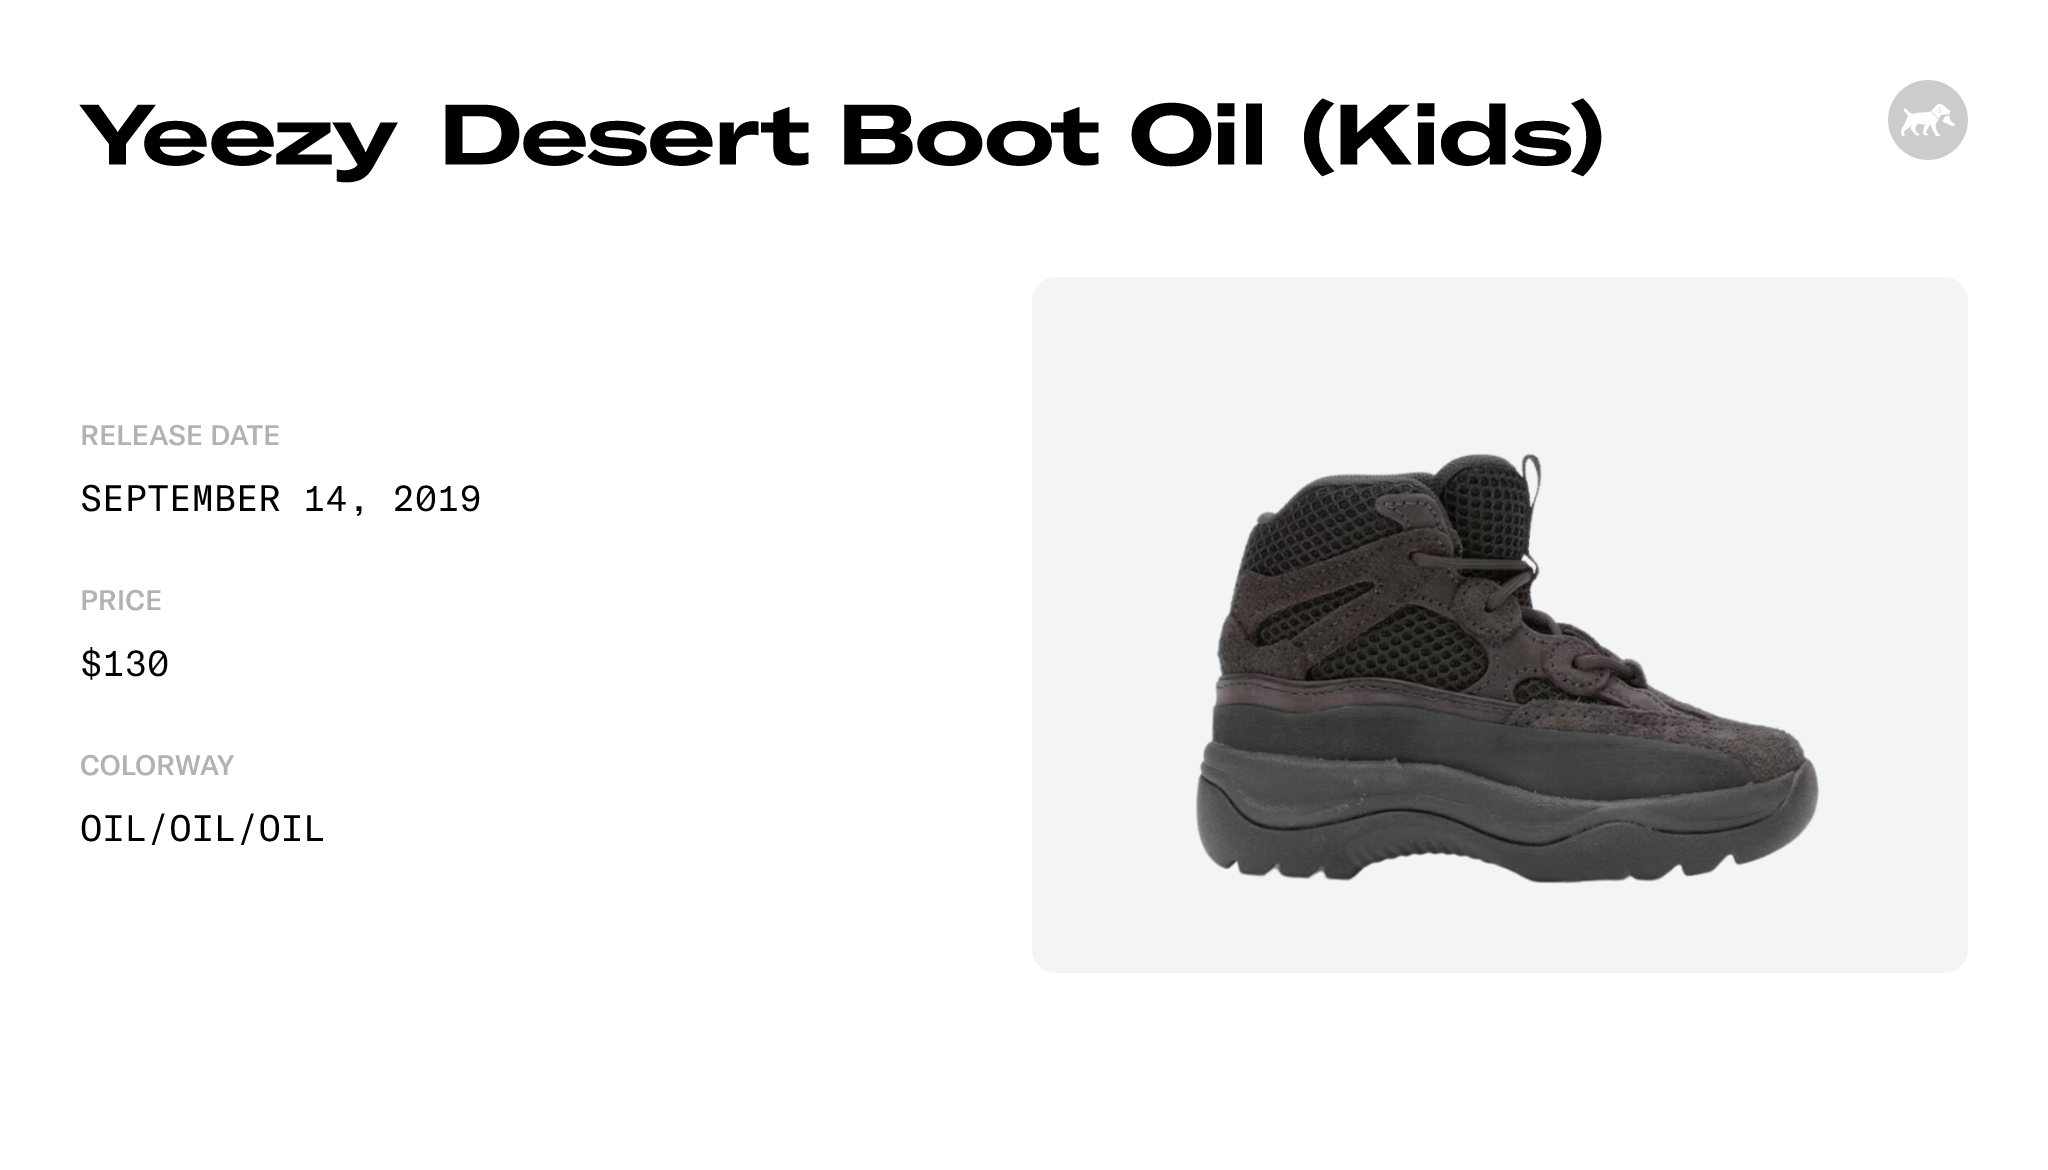 Yeezy Desert Boot Oil (Kids) - EG6489 Raffles and Release Date